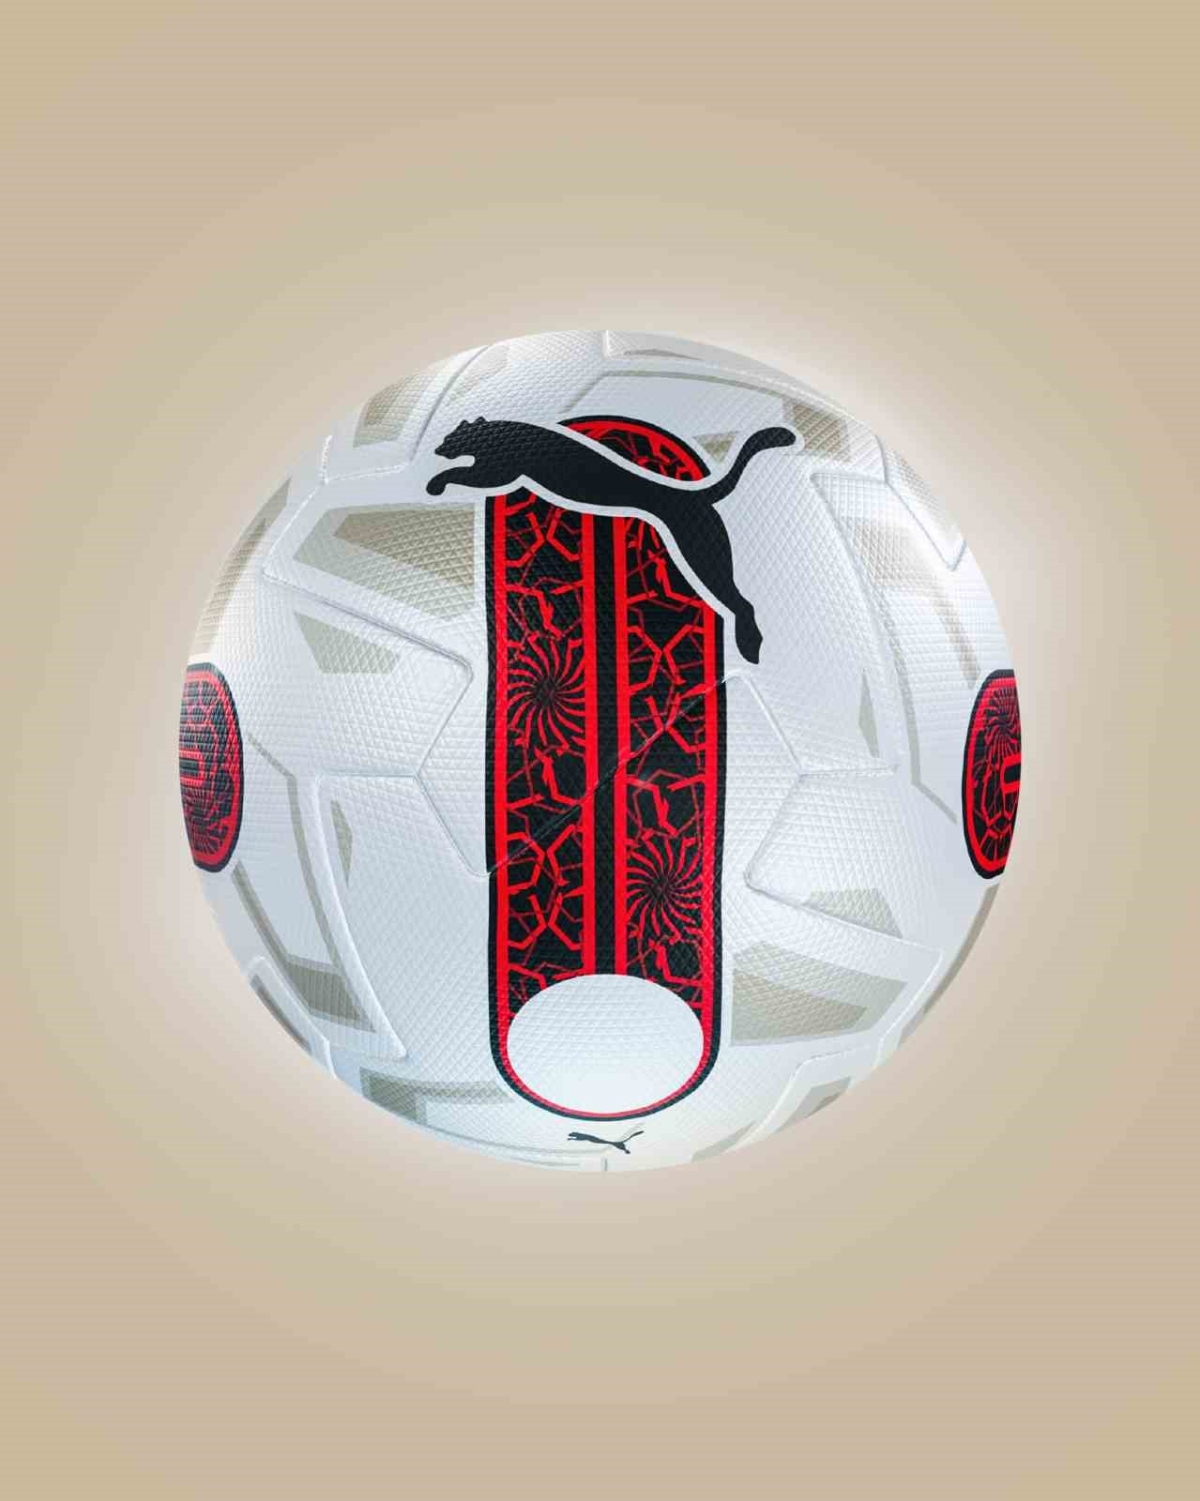 Yeni sezonda Türkiye liglerinde kullanılacak top tanıtıldı
